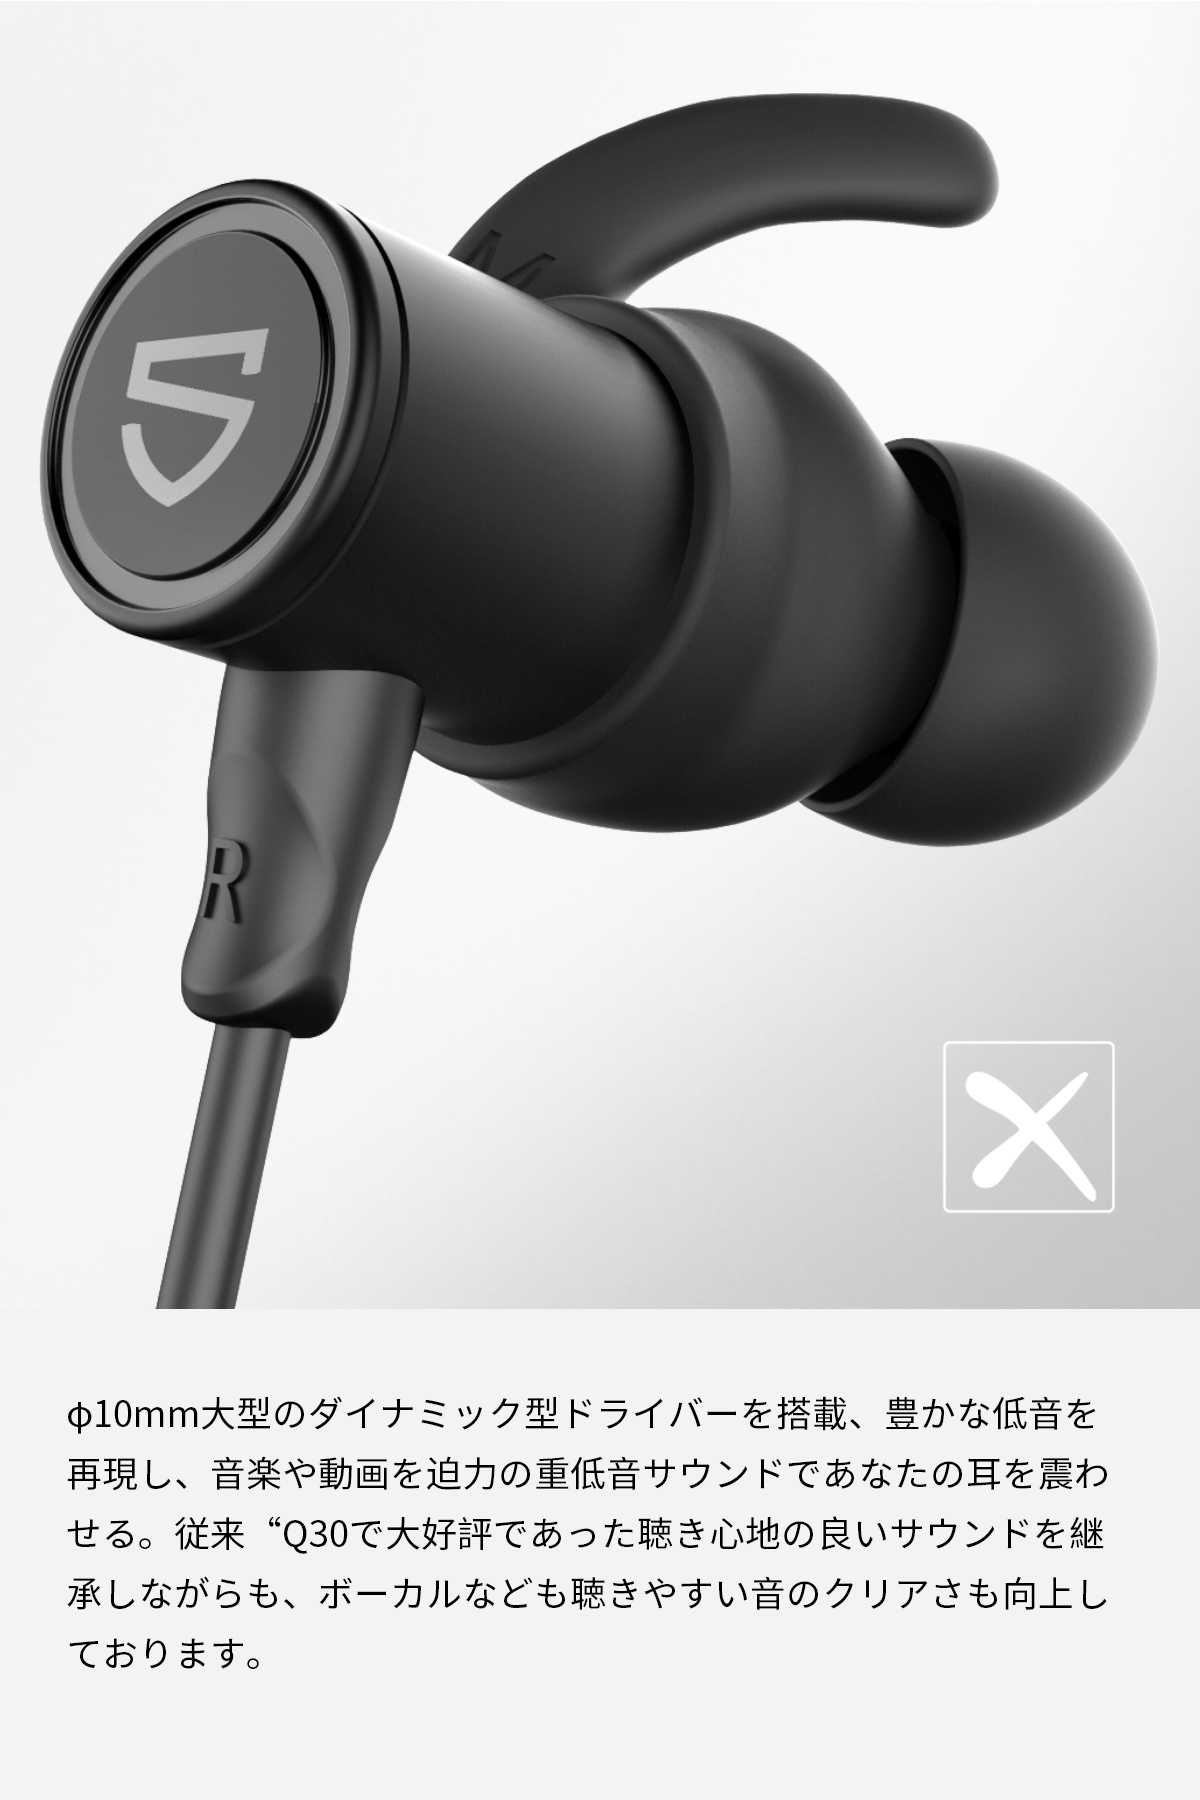 日本最大の 耳掛けイヤホン おすすめ 片耳 ワイヤレス 大好評 金 スポーツ 便利